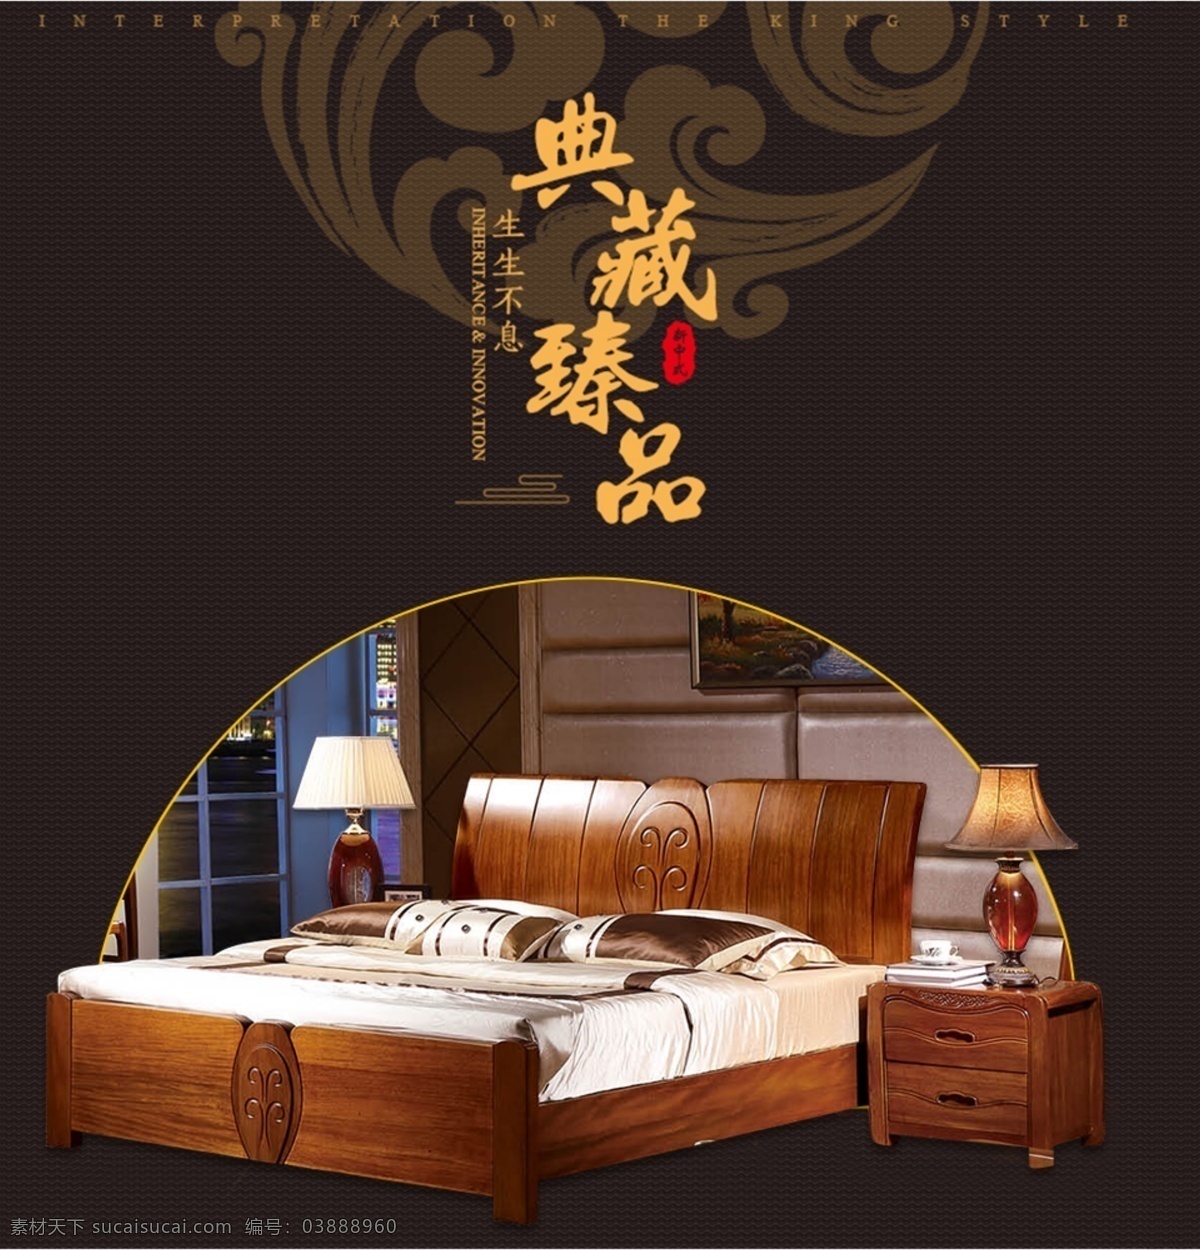 中式 古典 雕花 全 实木家具 原创 海报 中国风 典雅 全实木家具 双人床 原创海报